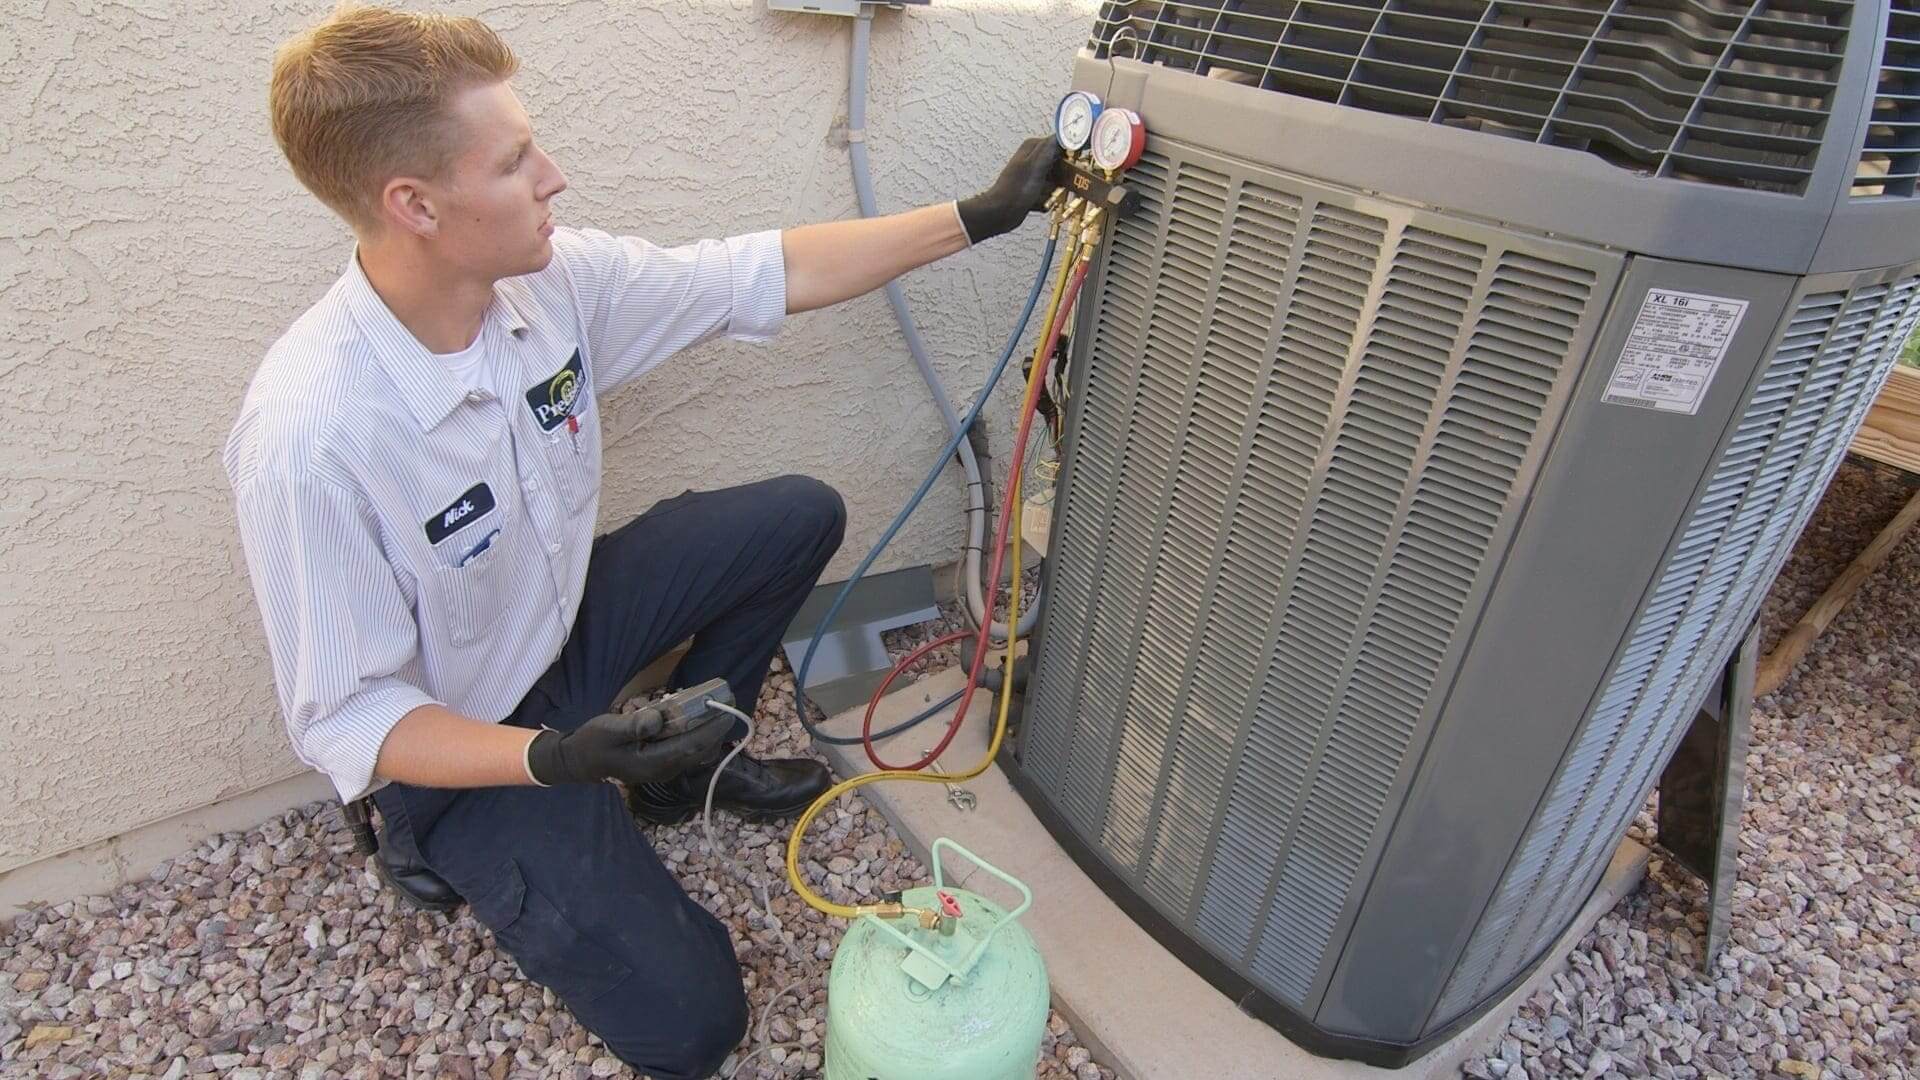 air conditioner maintenance checklist